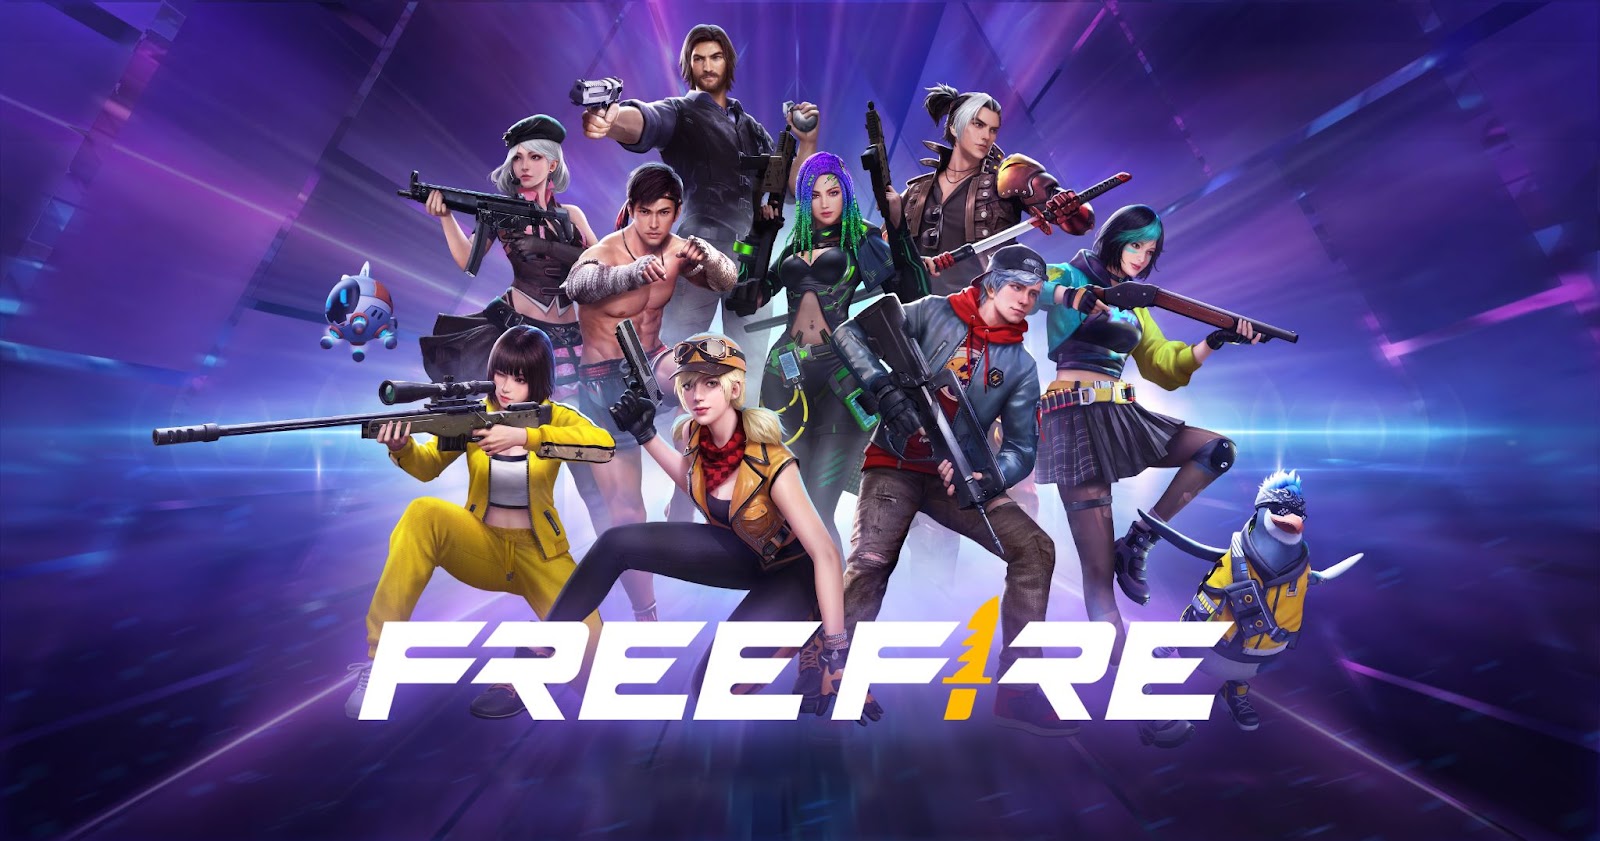 Free Fire trở thành một trong những tựa game tiên phong có cộng đồng game thủ xây trường vùng cao [HOT]